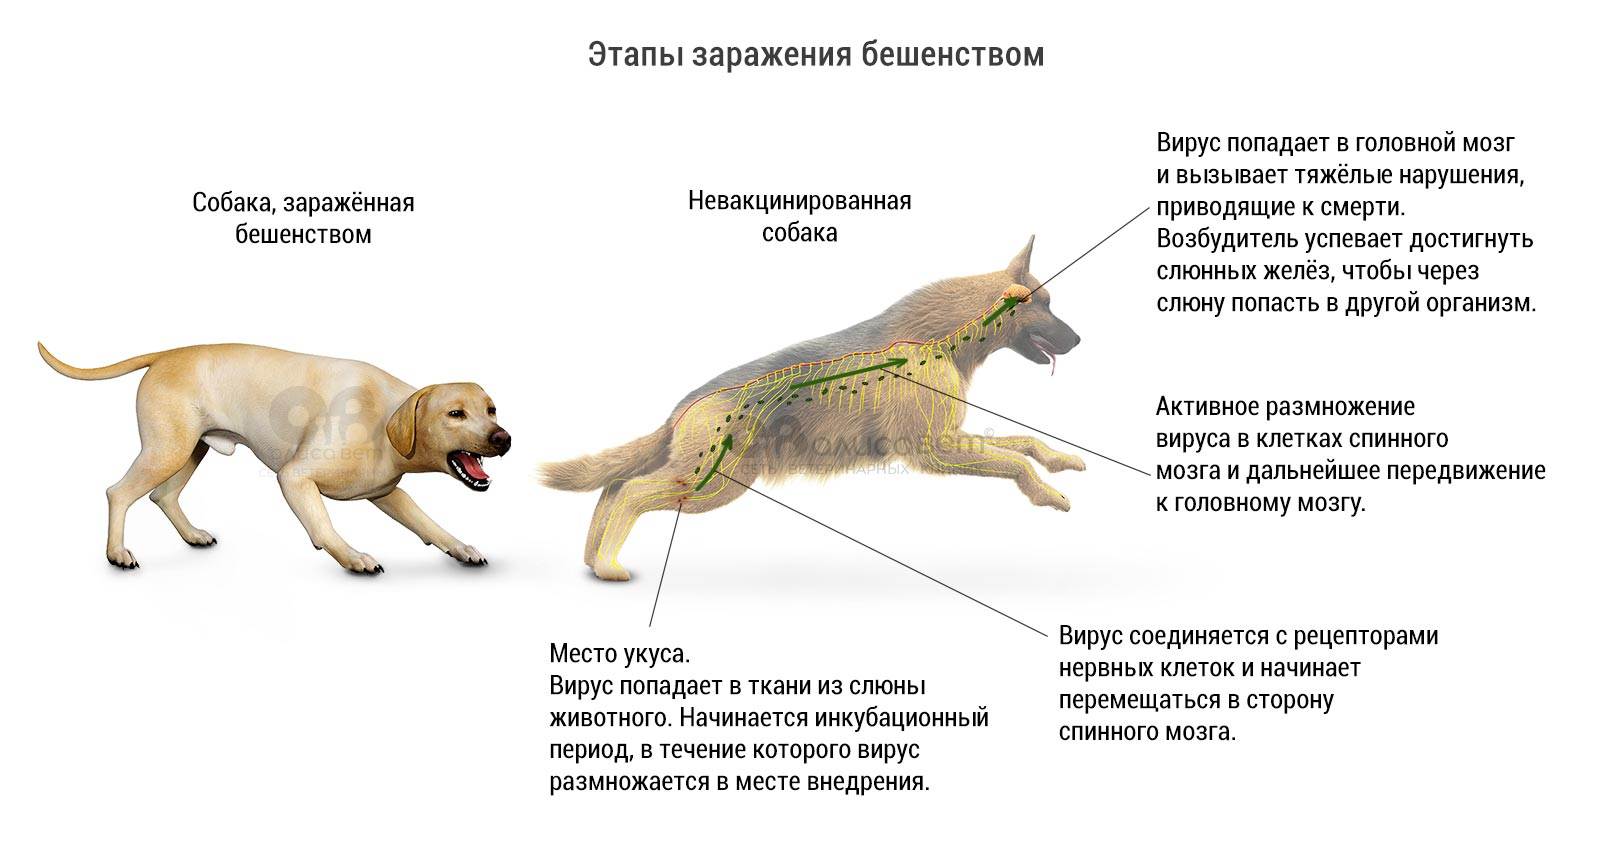 Болезнь ауески у собак - симптомы, диагностика, организация лечения